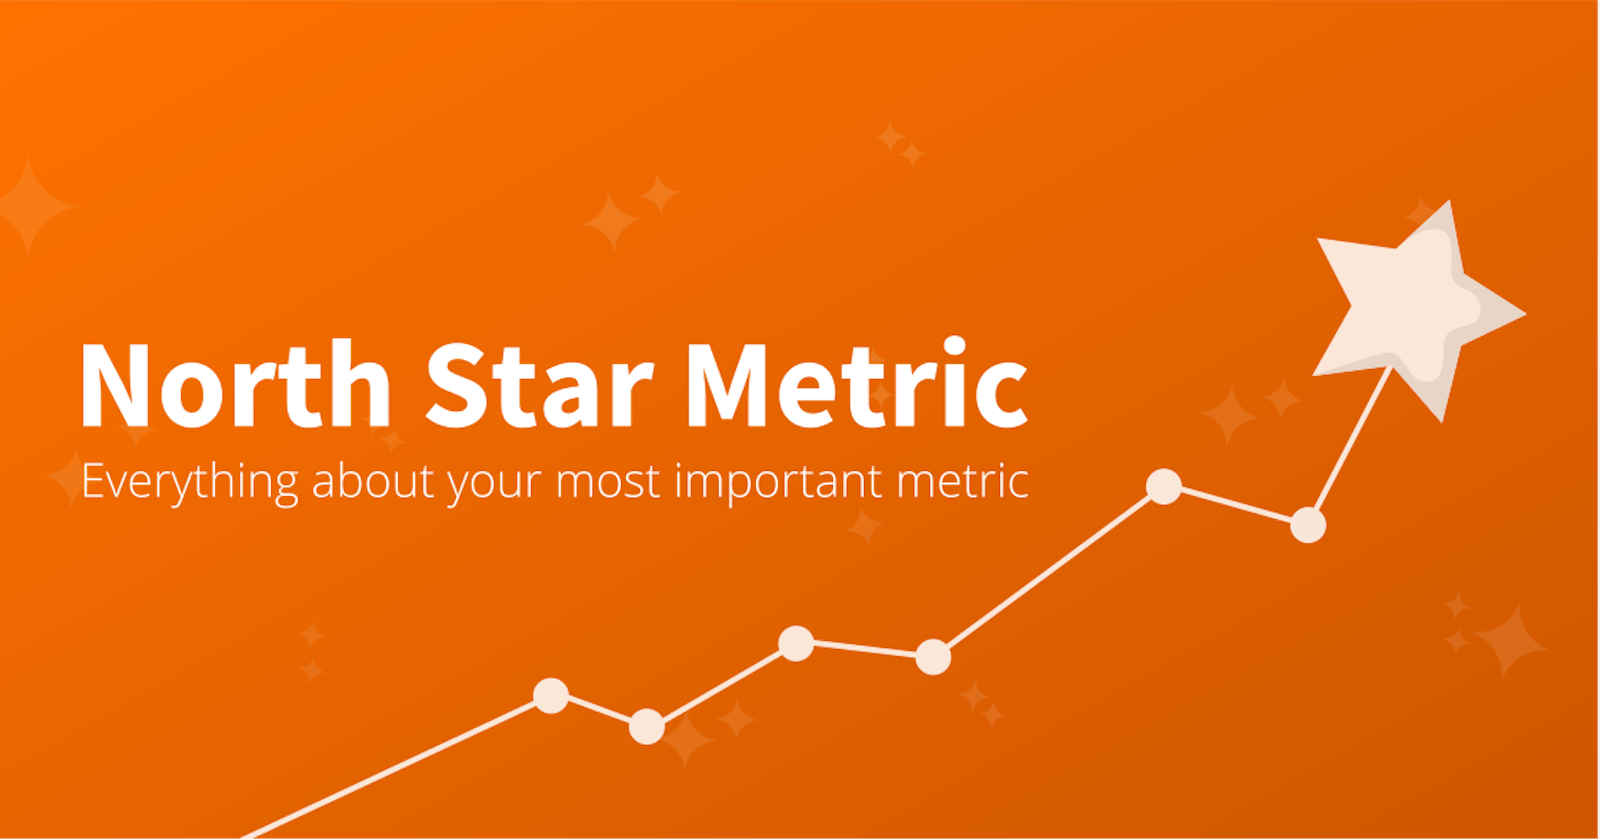 Resumen: "North Star Metric" como estrategia de crecimiento exponencial en las empresas digitales